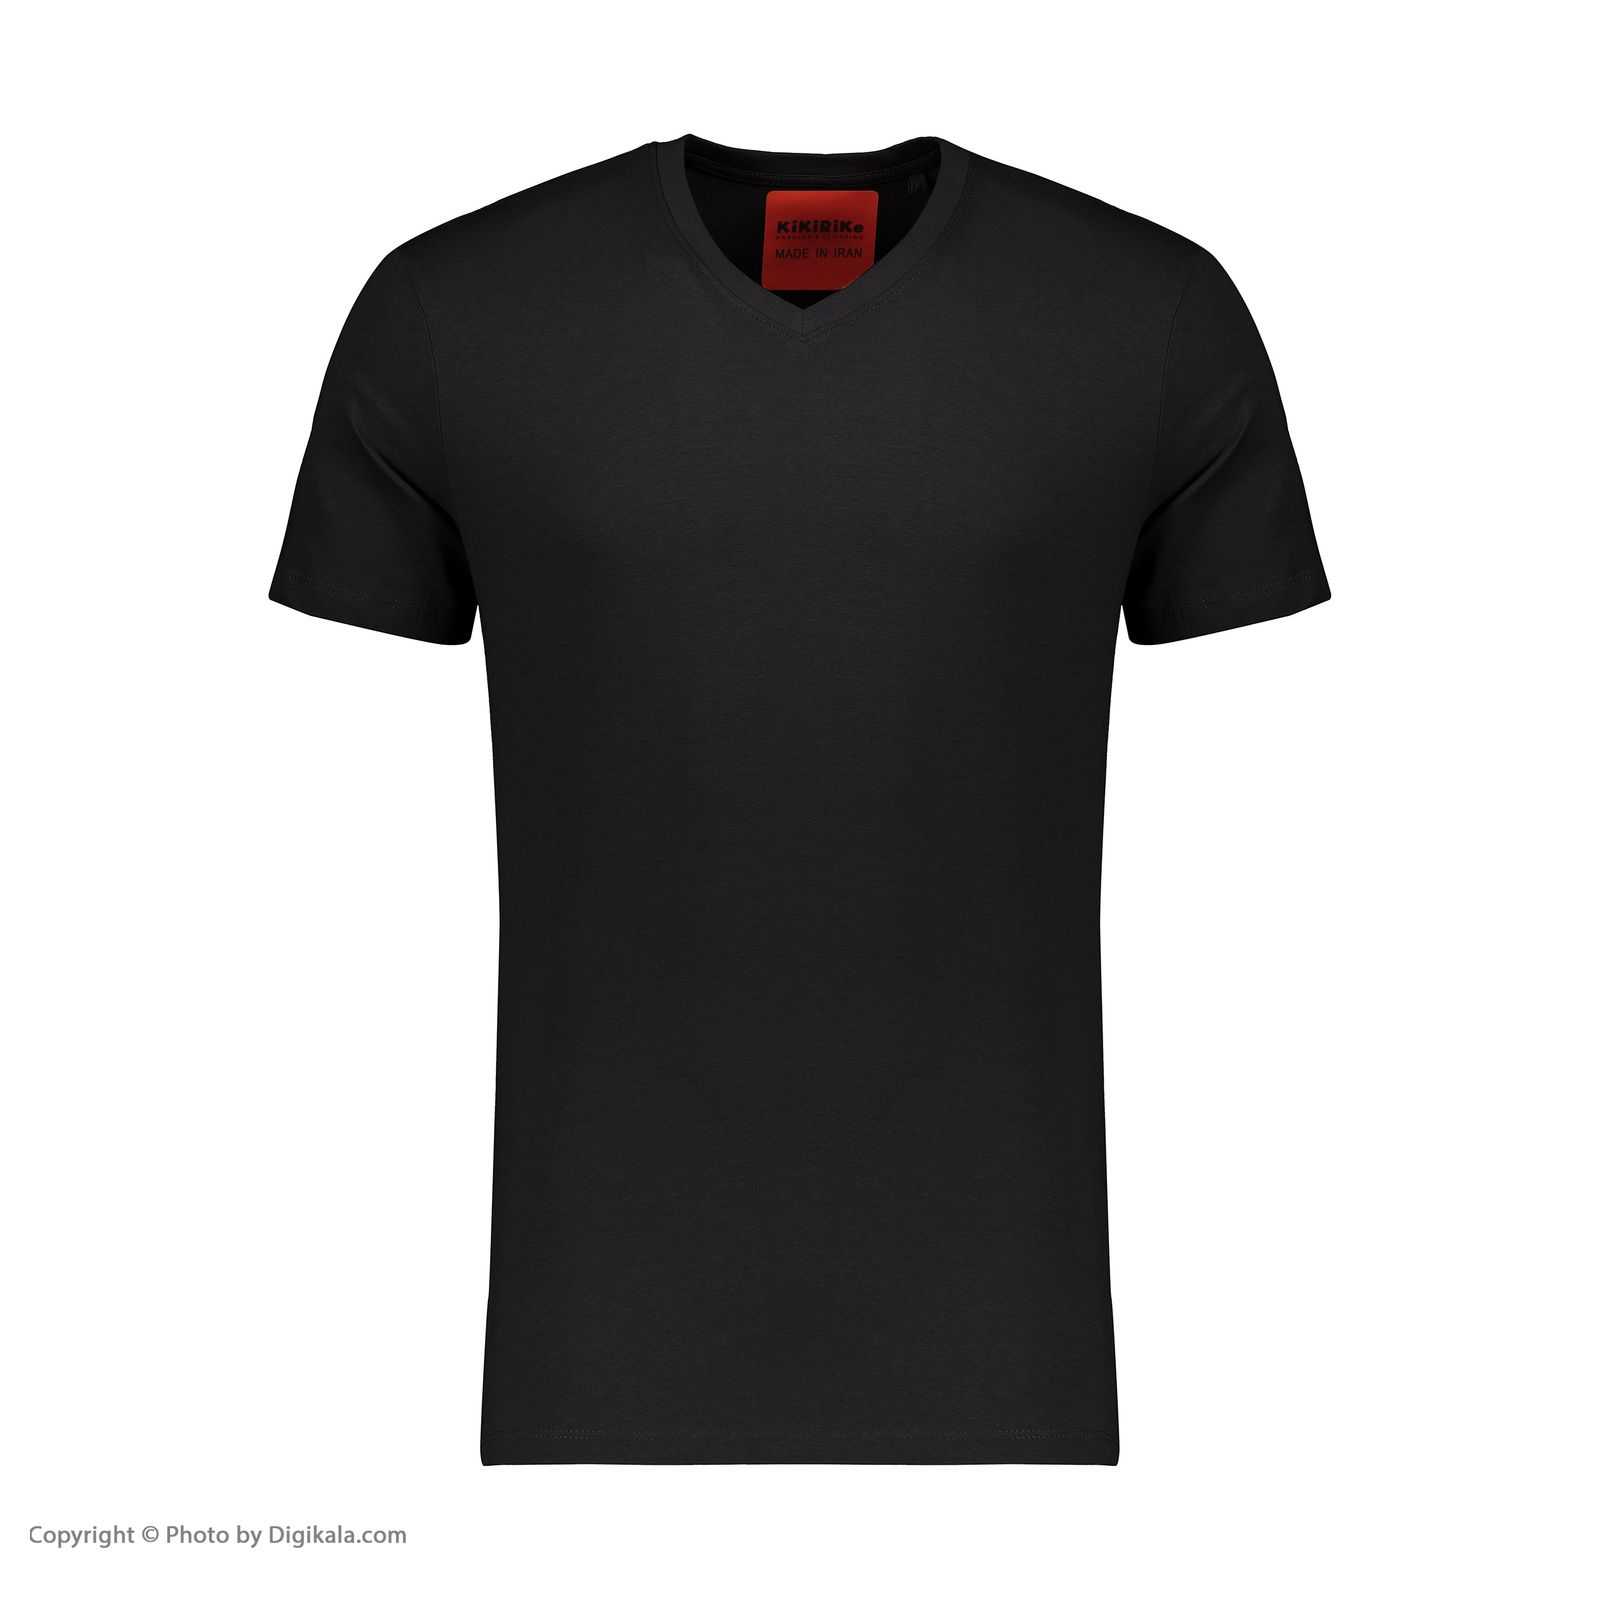 تی شرت مردانه کیکی رایکی مدل MBB02989-001 -  - 2